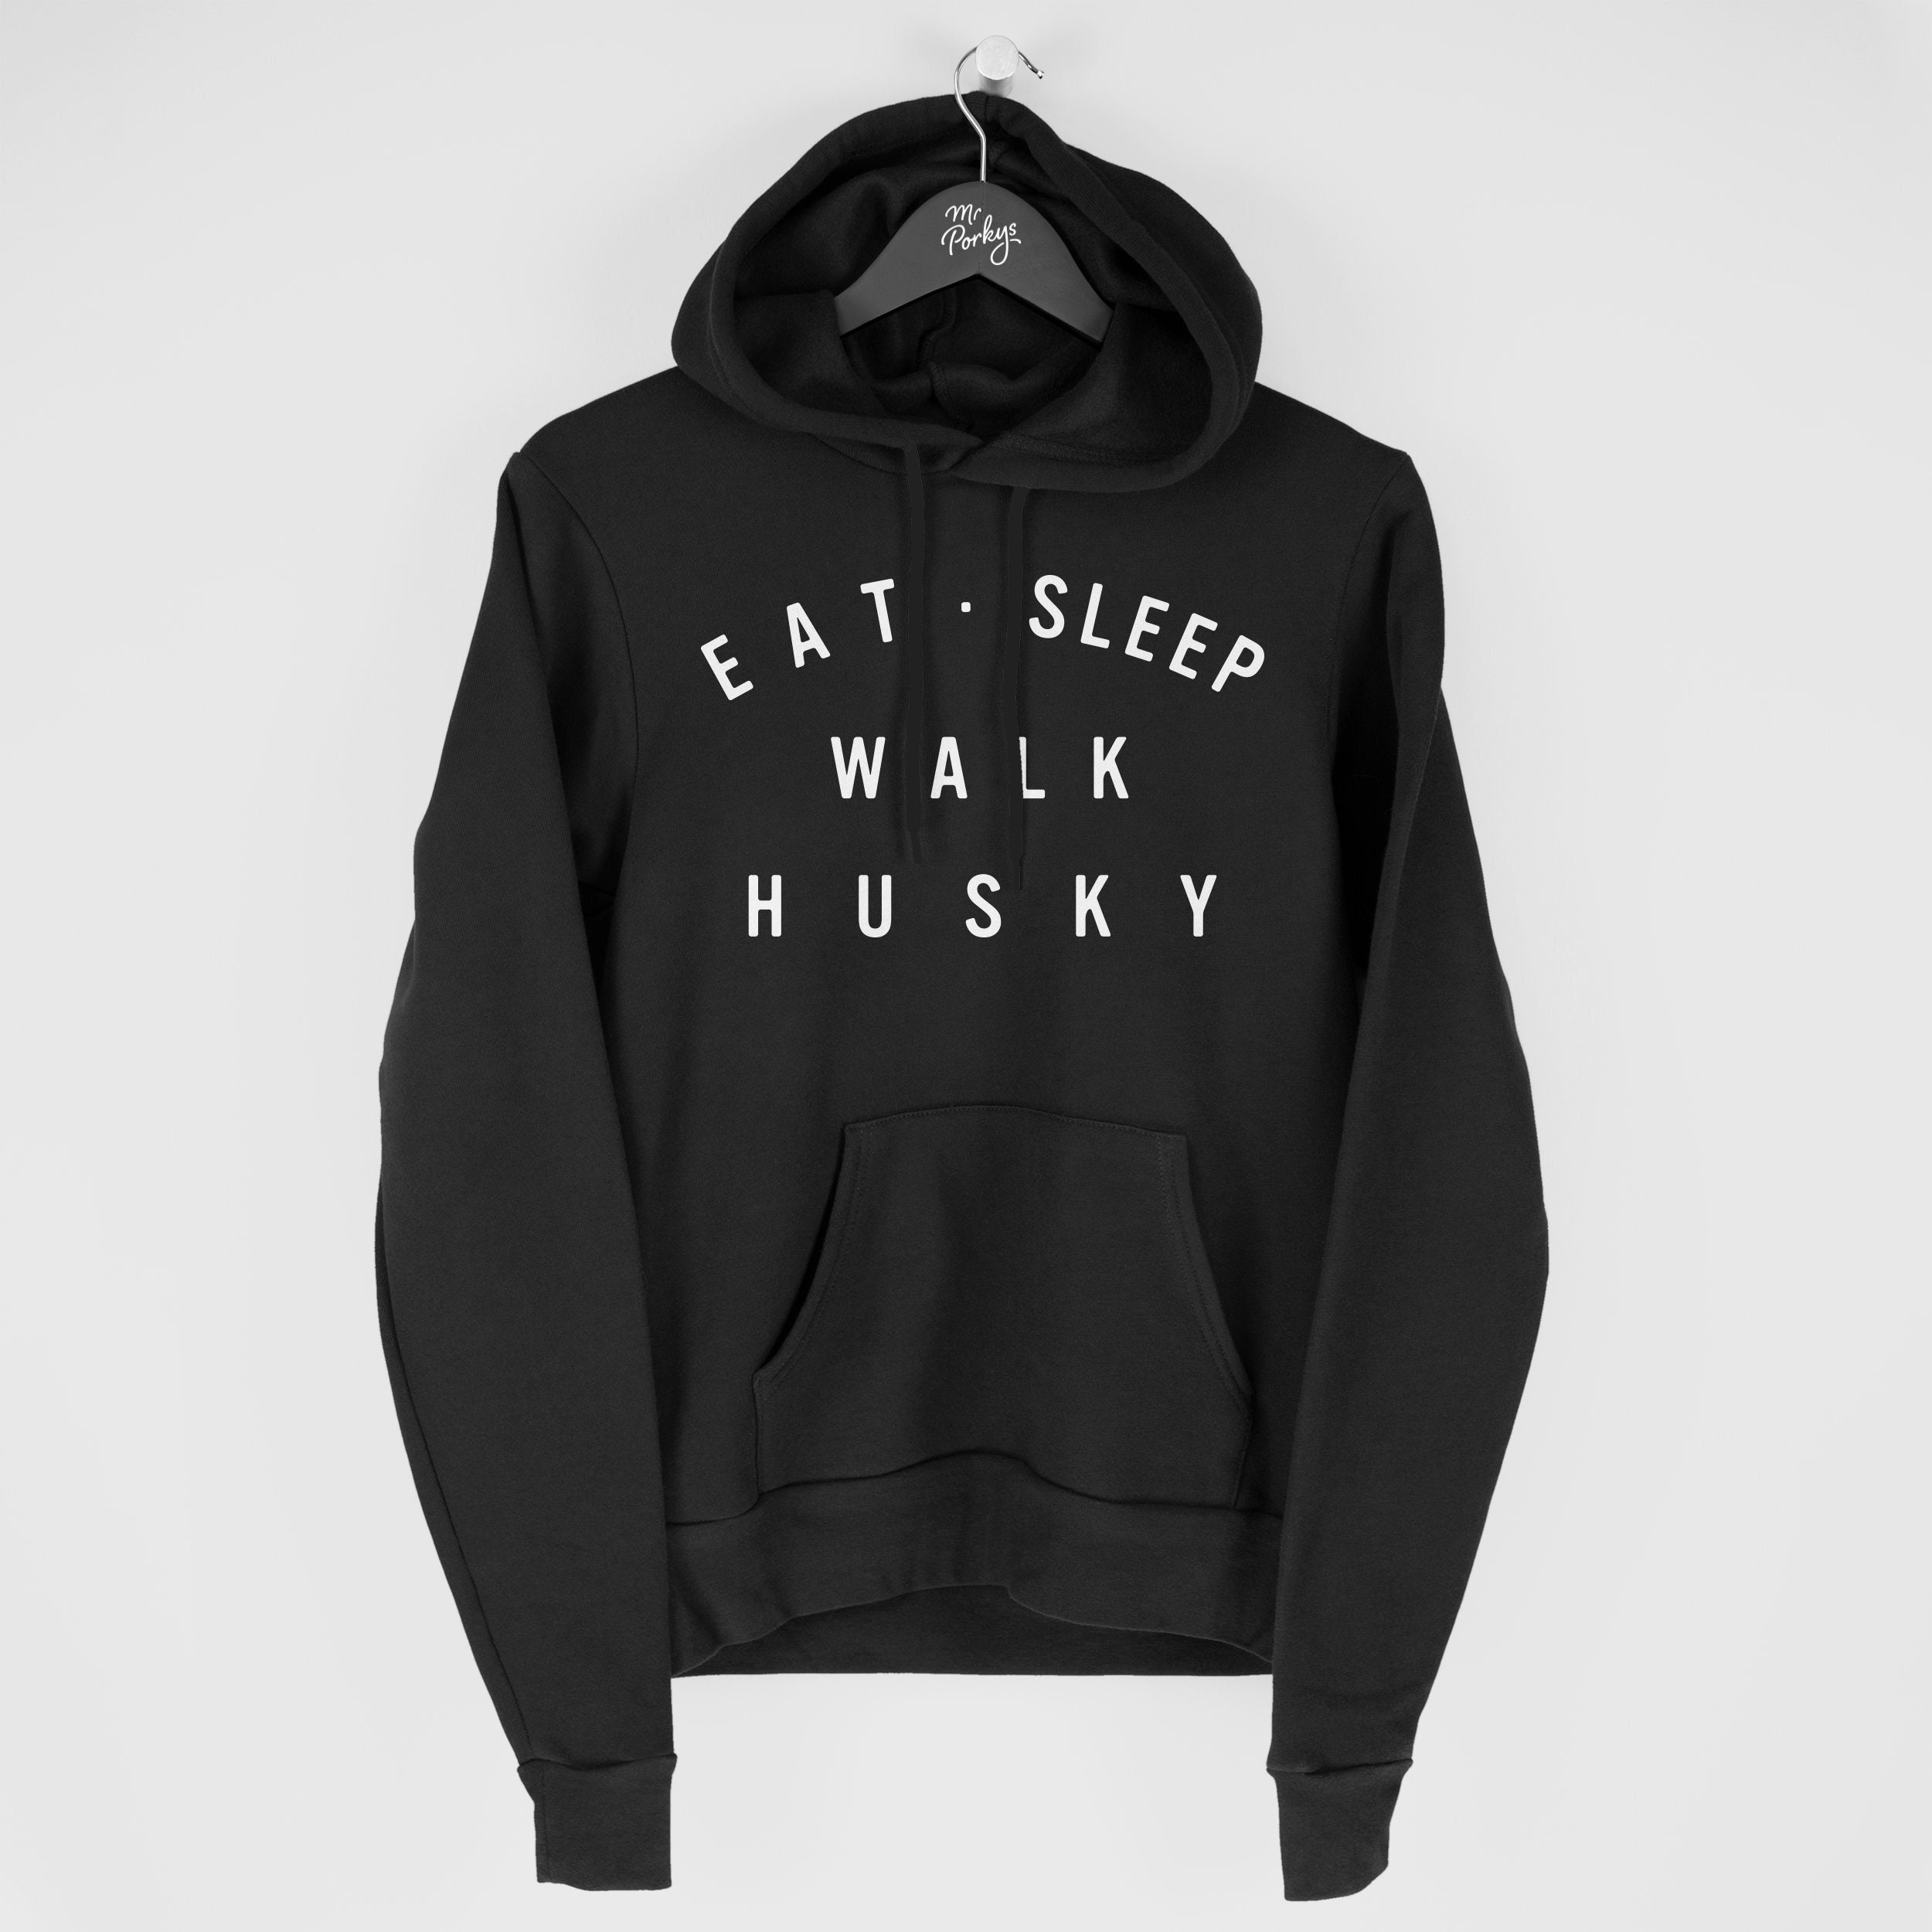 Husky Hoodie, Eat Sleep Walk Gift For Owner, Hoody